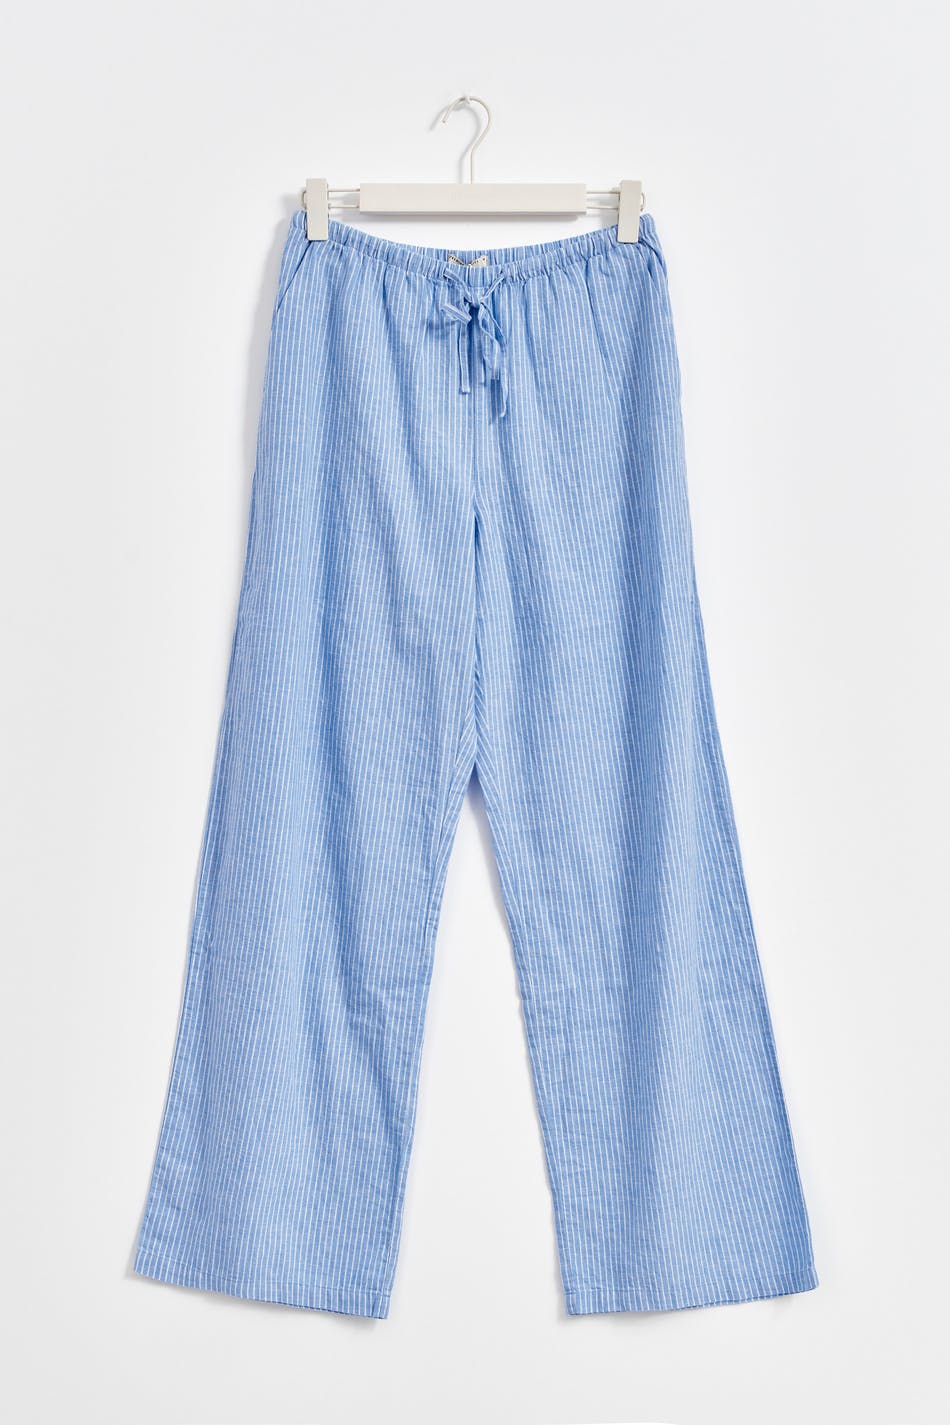 Gina Tricot - Tall linen blend trousers - hørbukser- Blue - L - Female